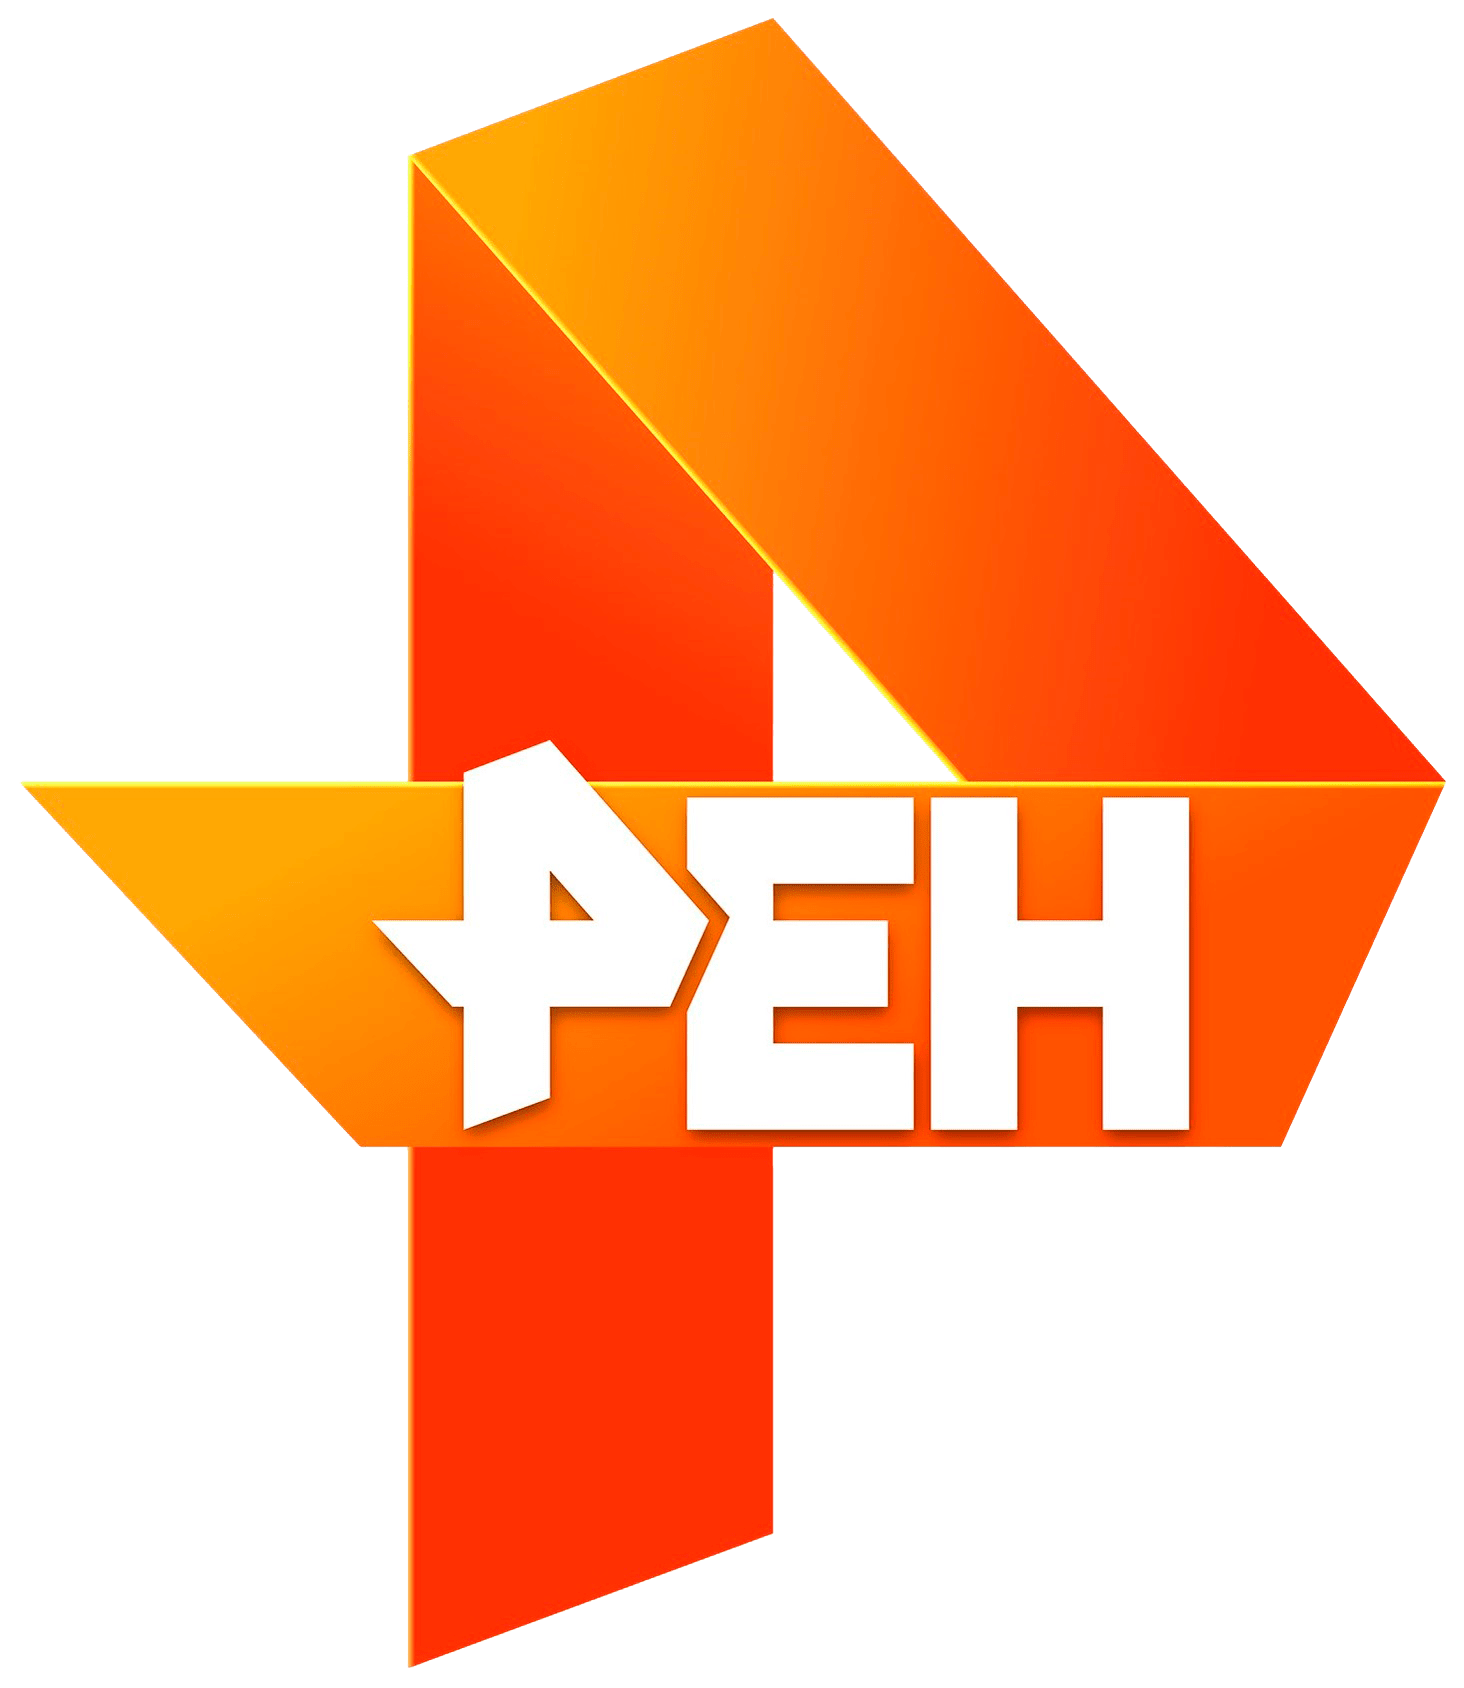 Раземщение рекламы РЕН ТВ, г.Челябинск